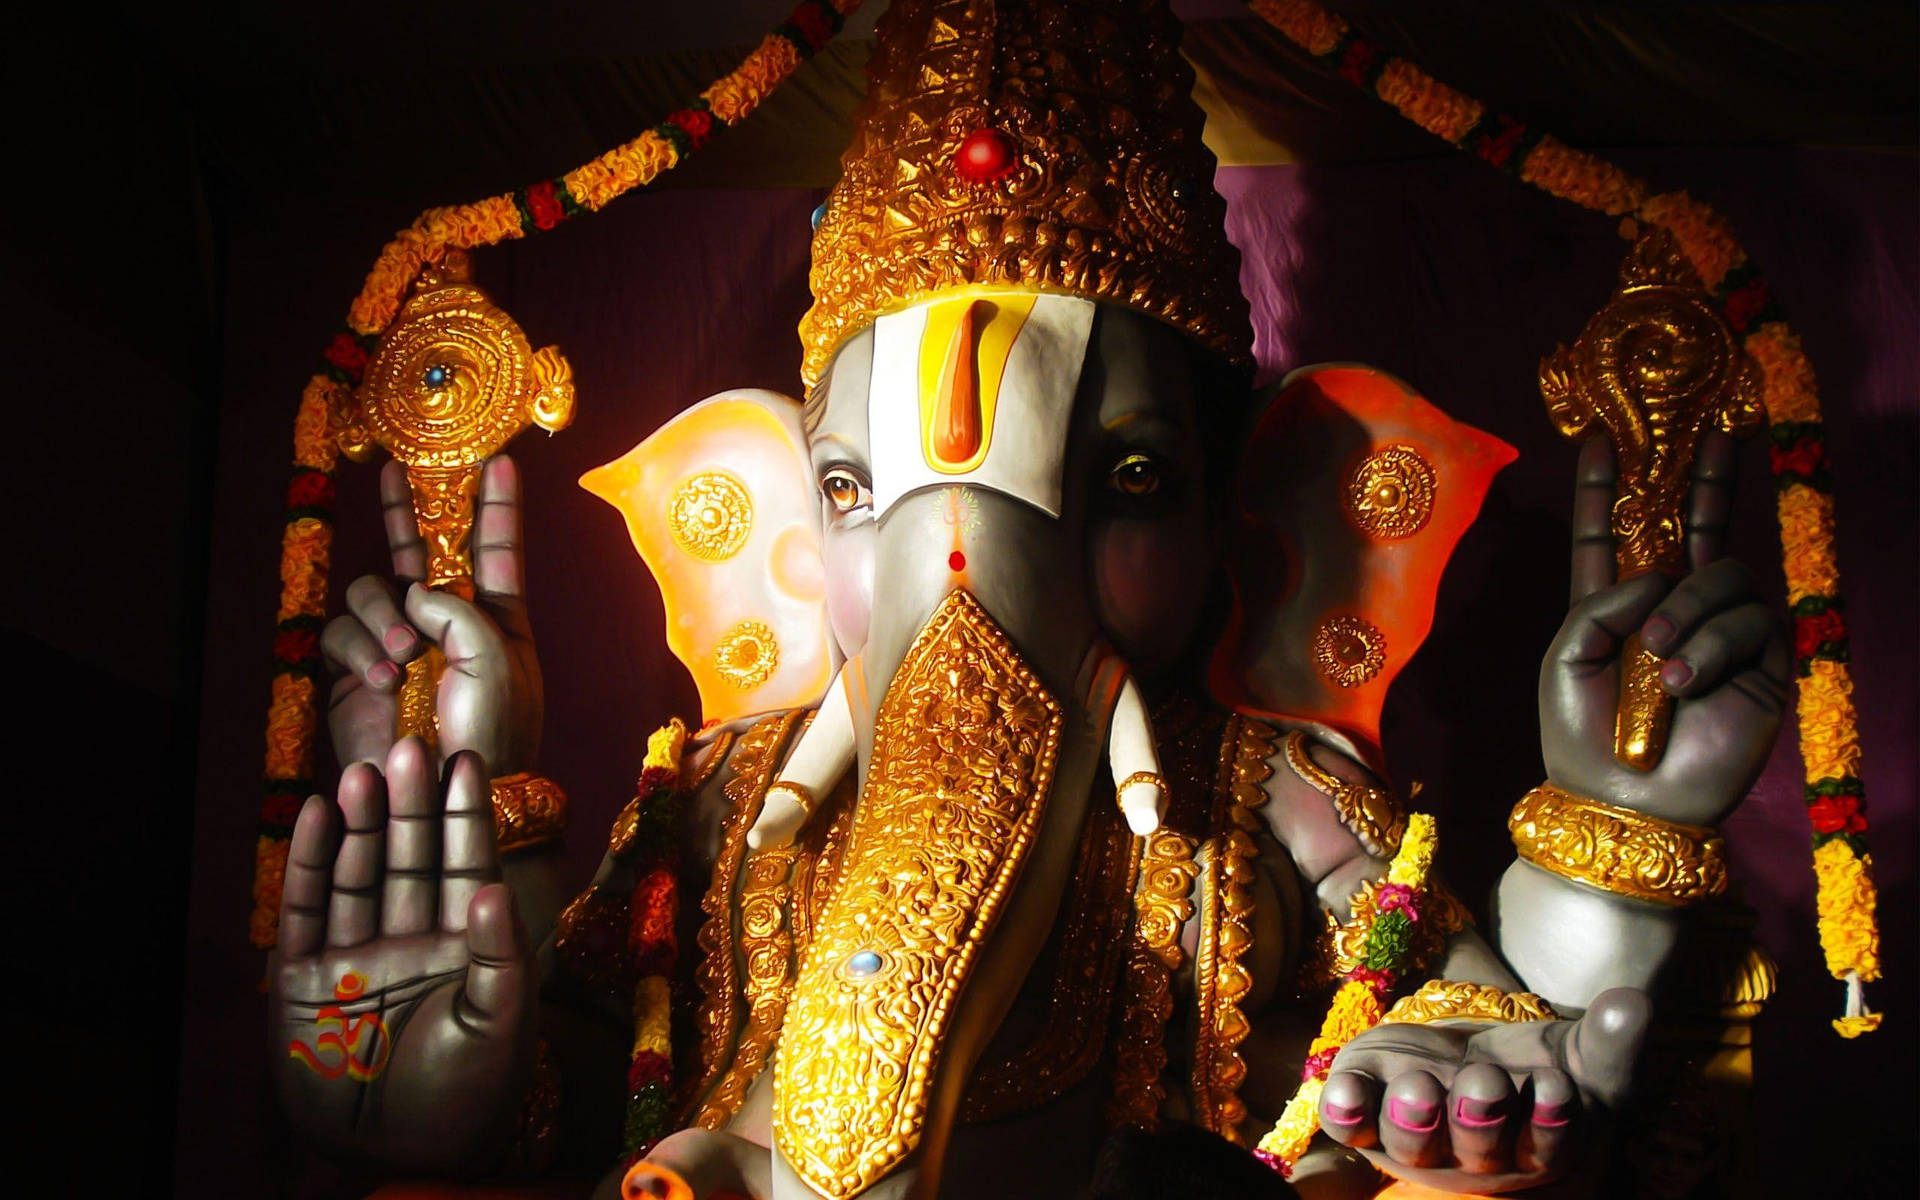 Hindu God Ganesh Desktop Wallpaper